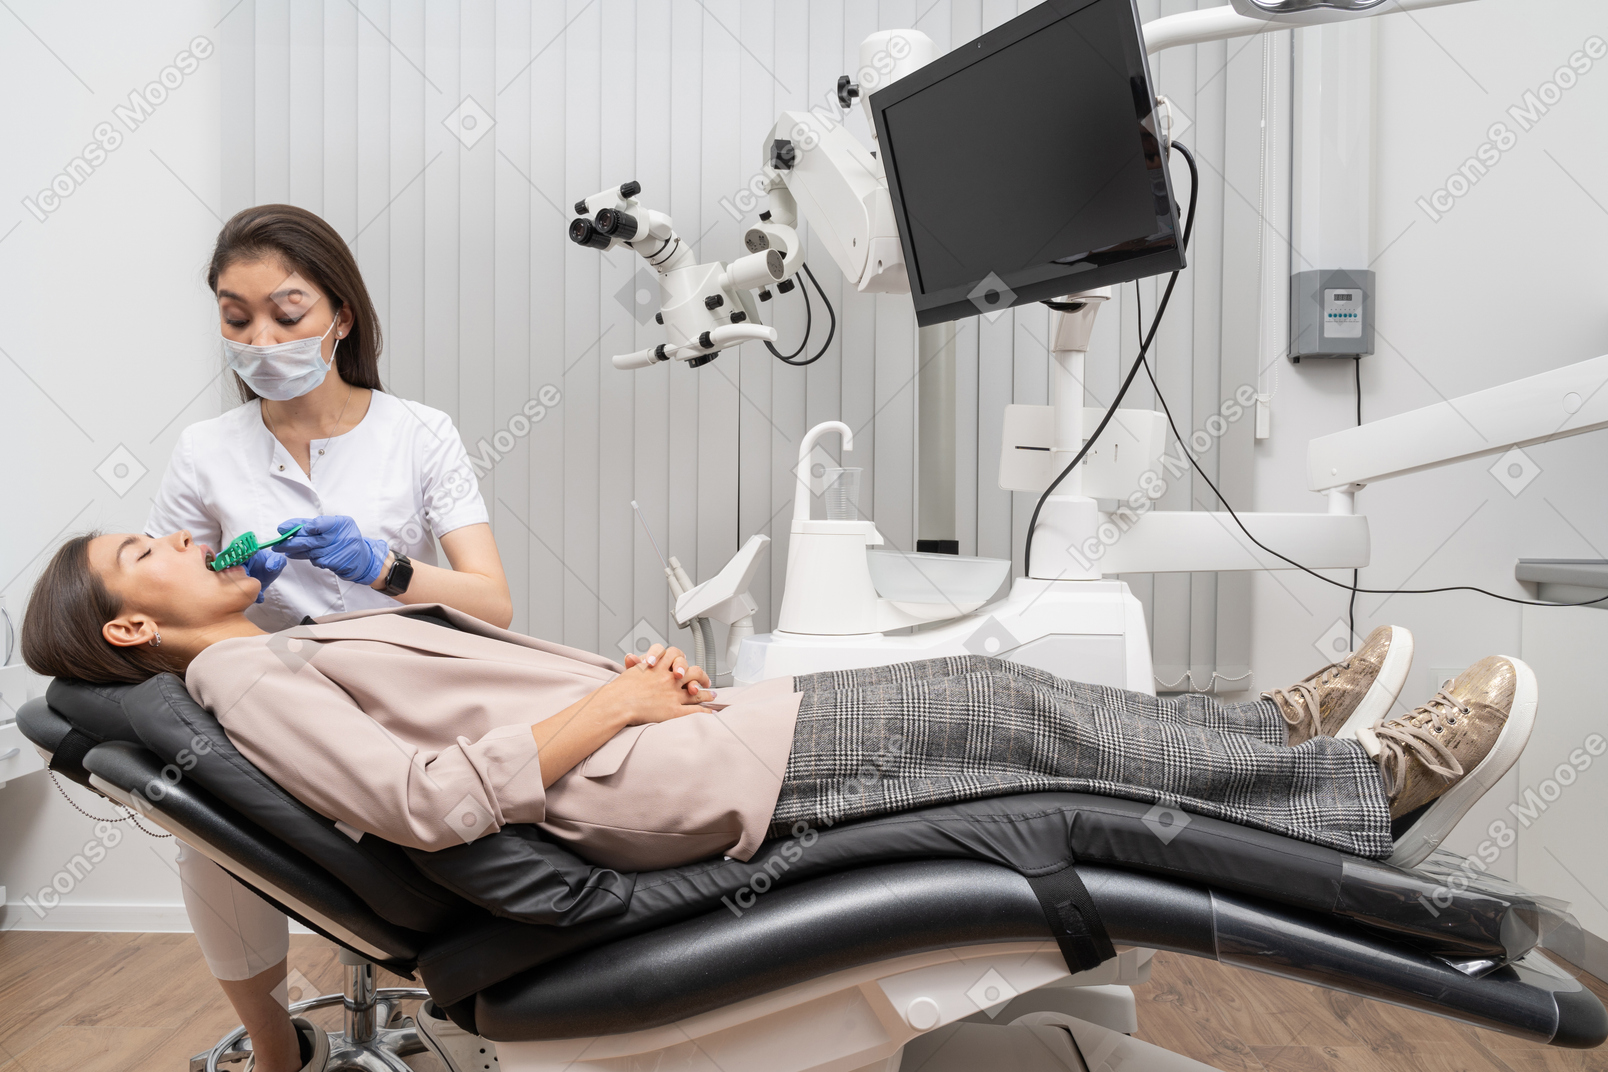 병원 캐비닛에서 그녀의 여성 환자에게 치과 기록을 만드는 여성 치과 의사의 전체 길이